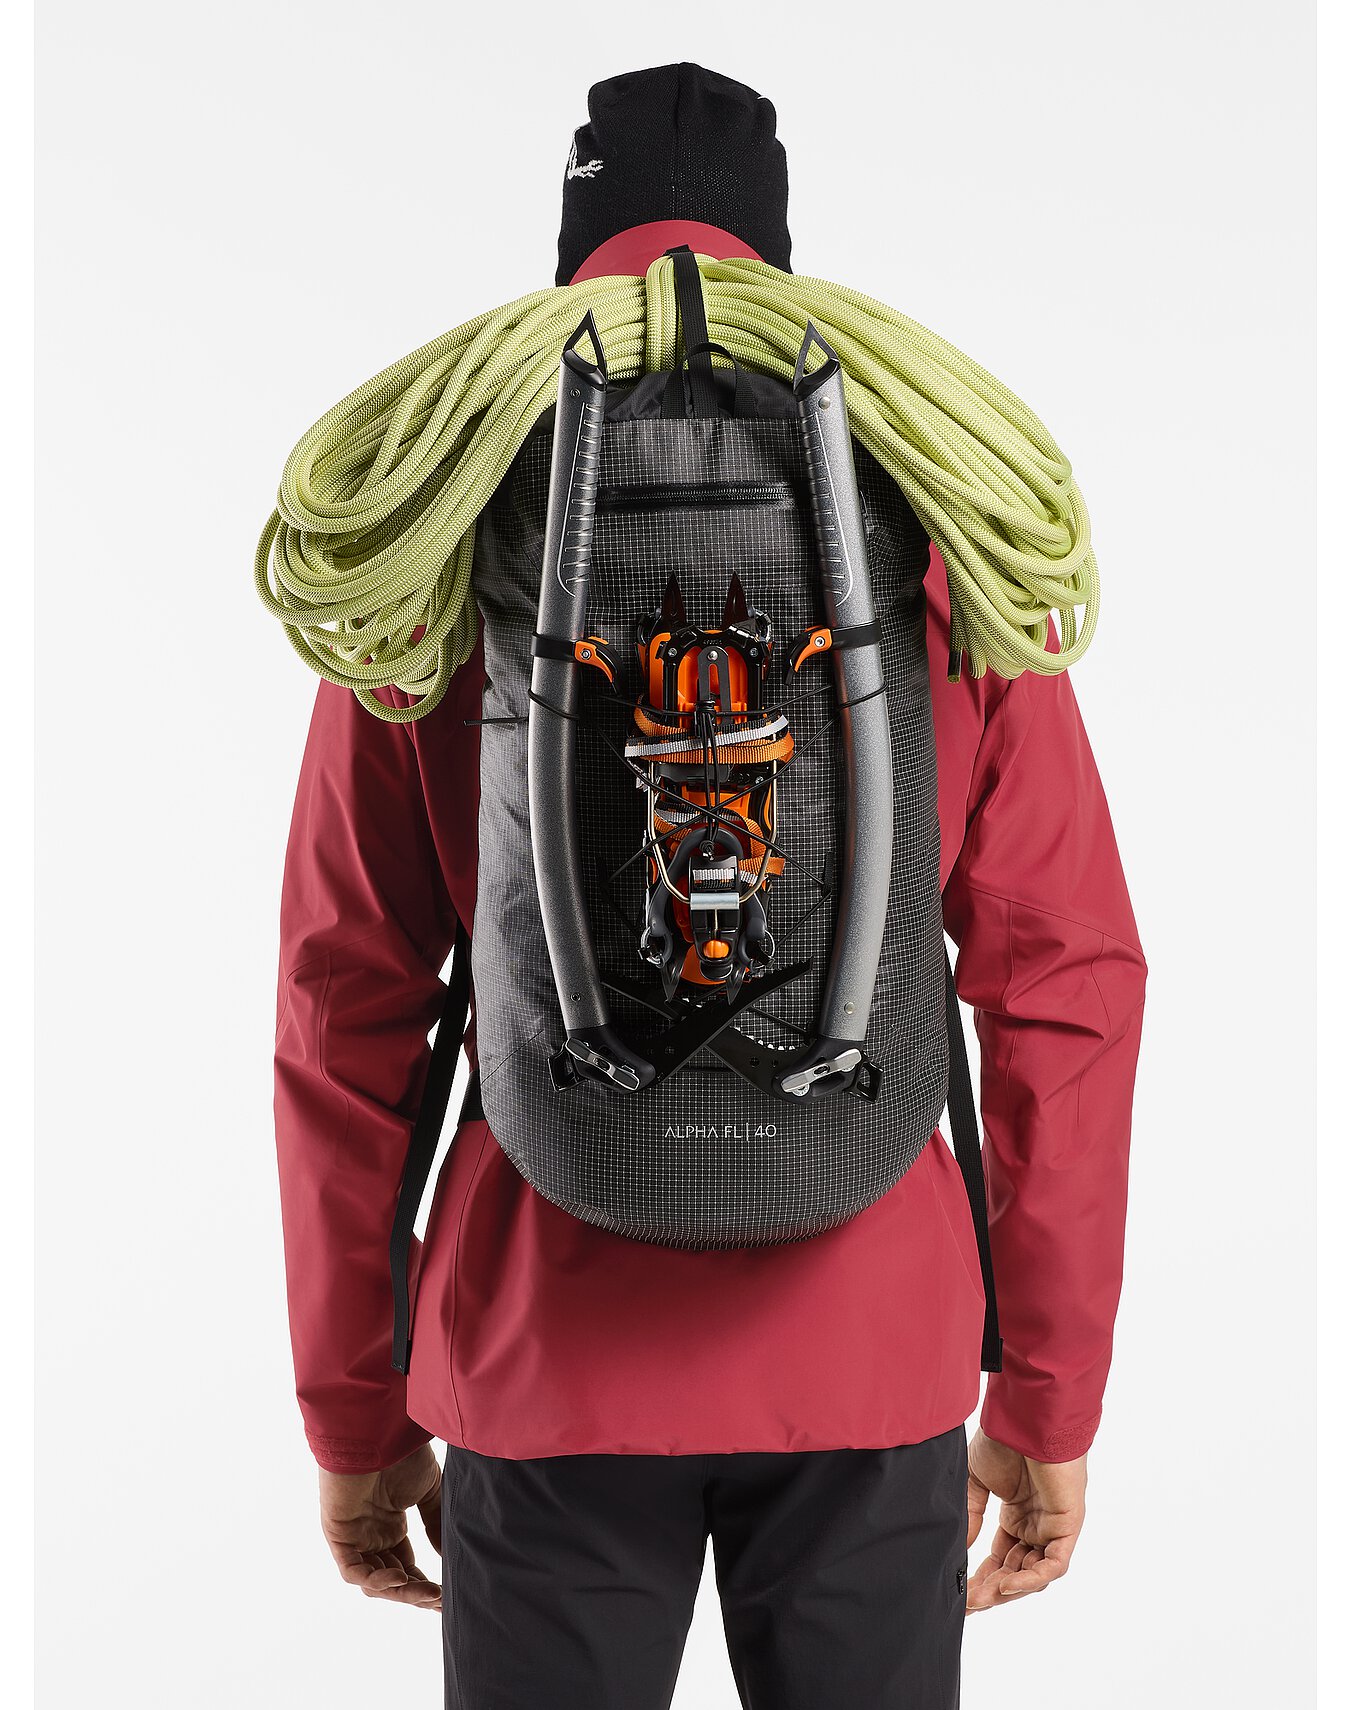 Alpha FL 40 Backpack | Arc'teryx Outlet